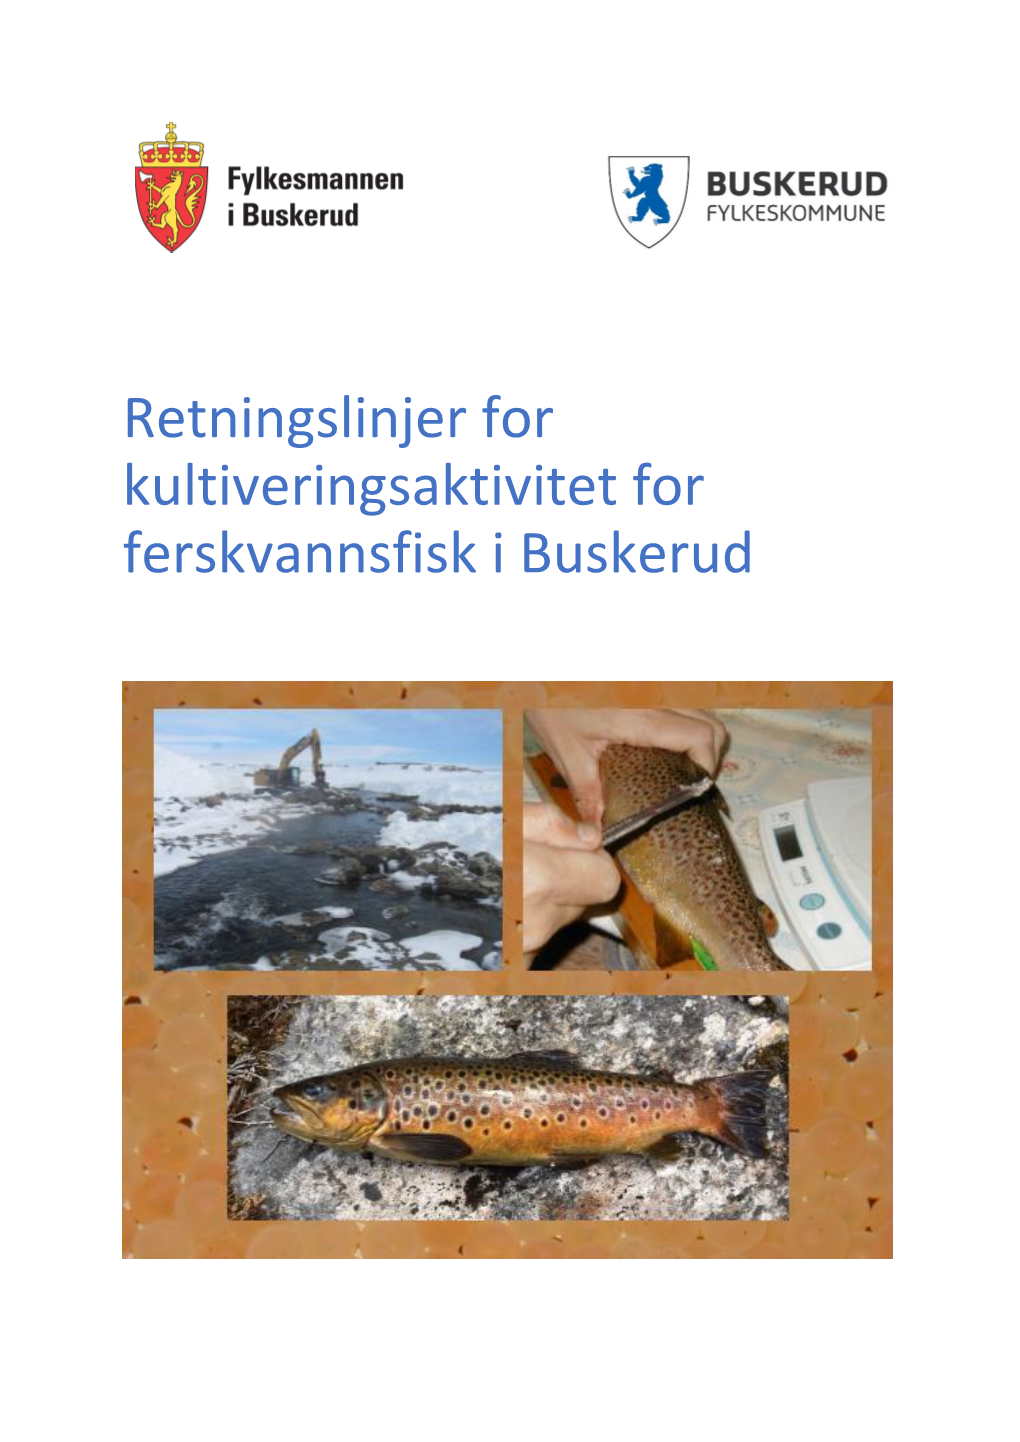 Retningslinjer for Kultiveringsaktivitet for Ferskvannsfisk I Buskerud